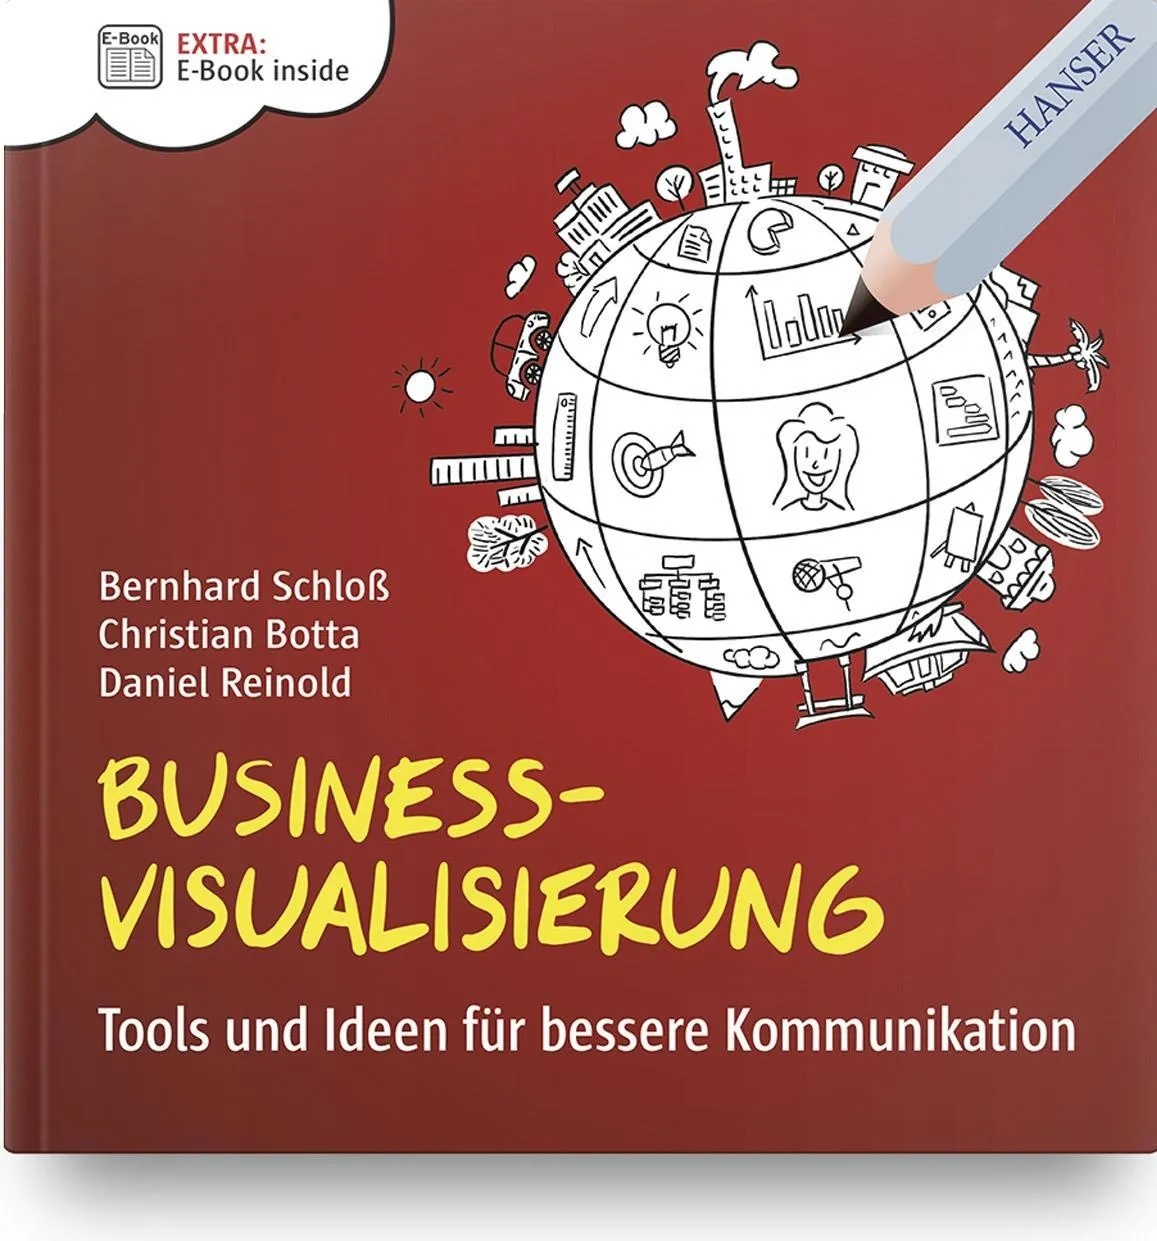 Business-Visualisierung, Fachbücher von Bernhard Schloss, Christian Botta, Daniel Reinold